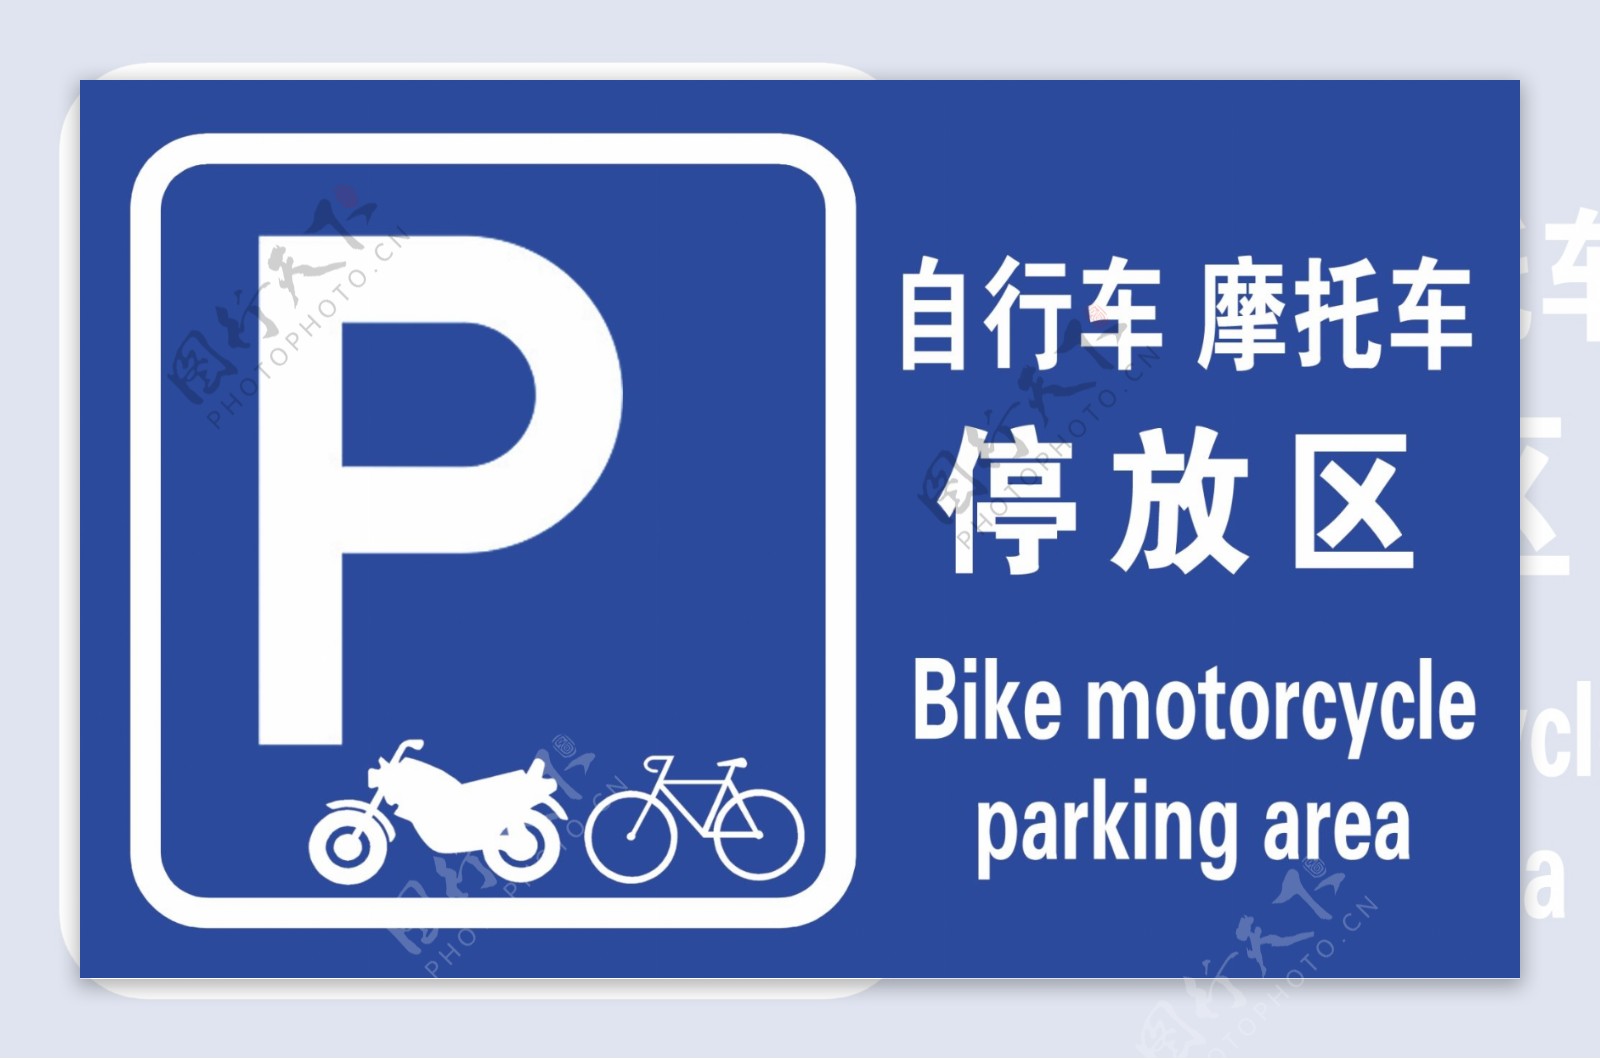 自行车摩托车停放区图片